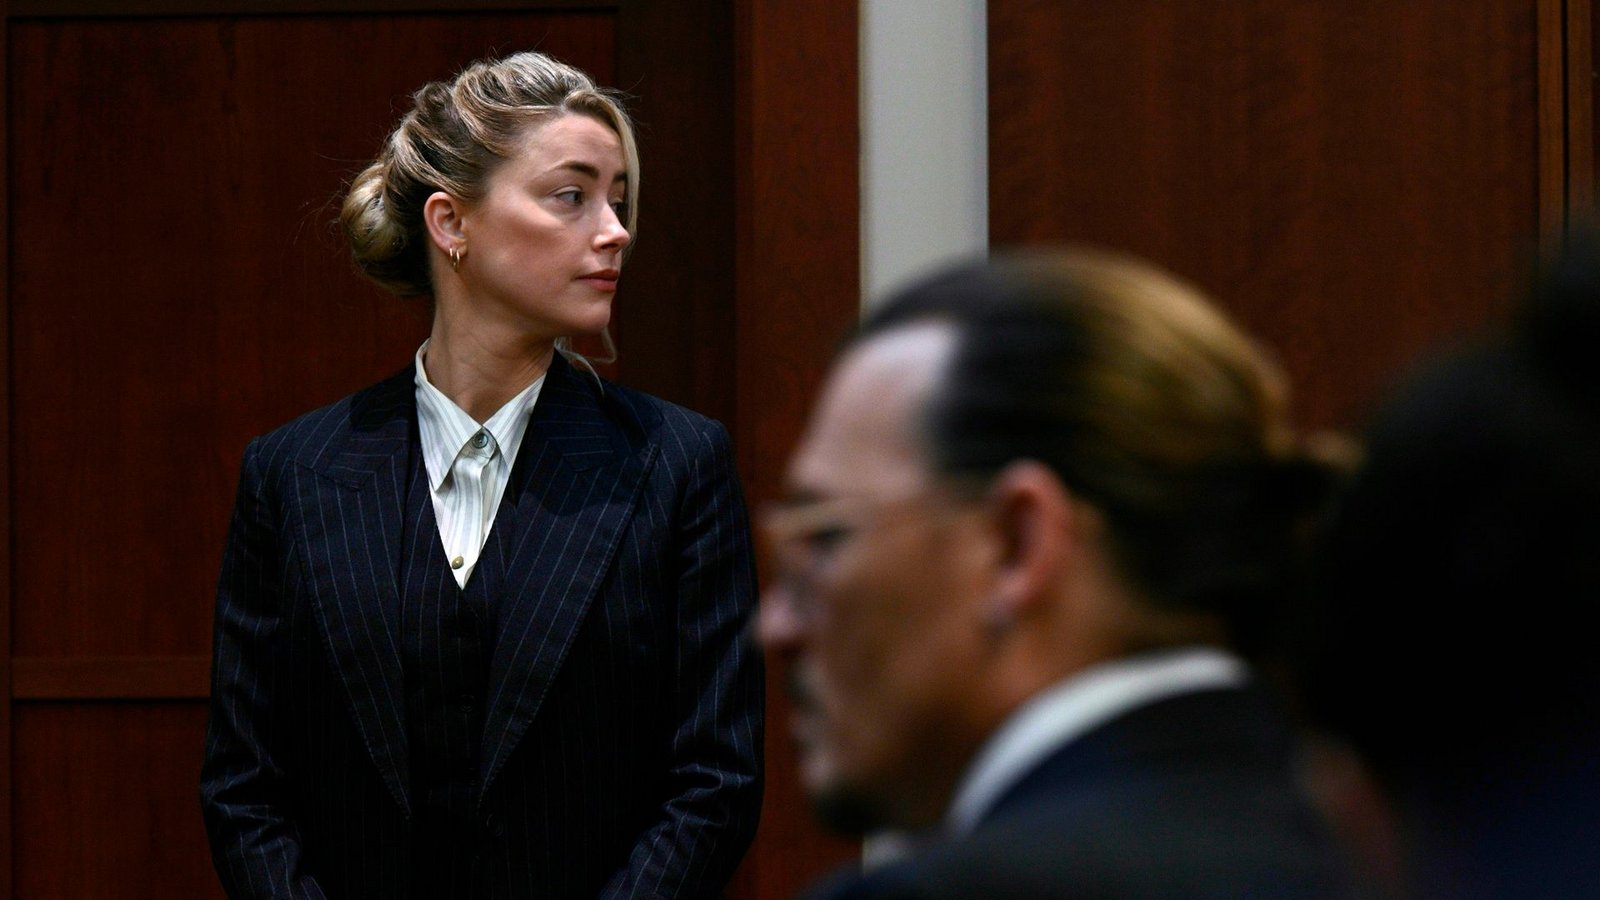 Liefern sich einen Rechtsstreit vor Gericht: Die Ex-Ehepartner Amber Heard und Johnny Depp.Foto: Brendan Smialowski/Pool AFP/AP/dpa